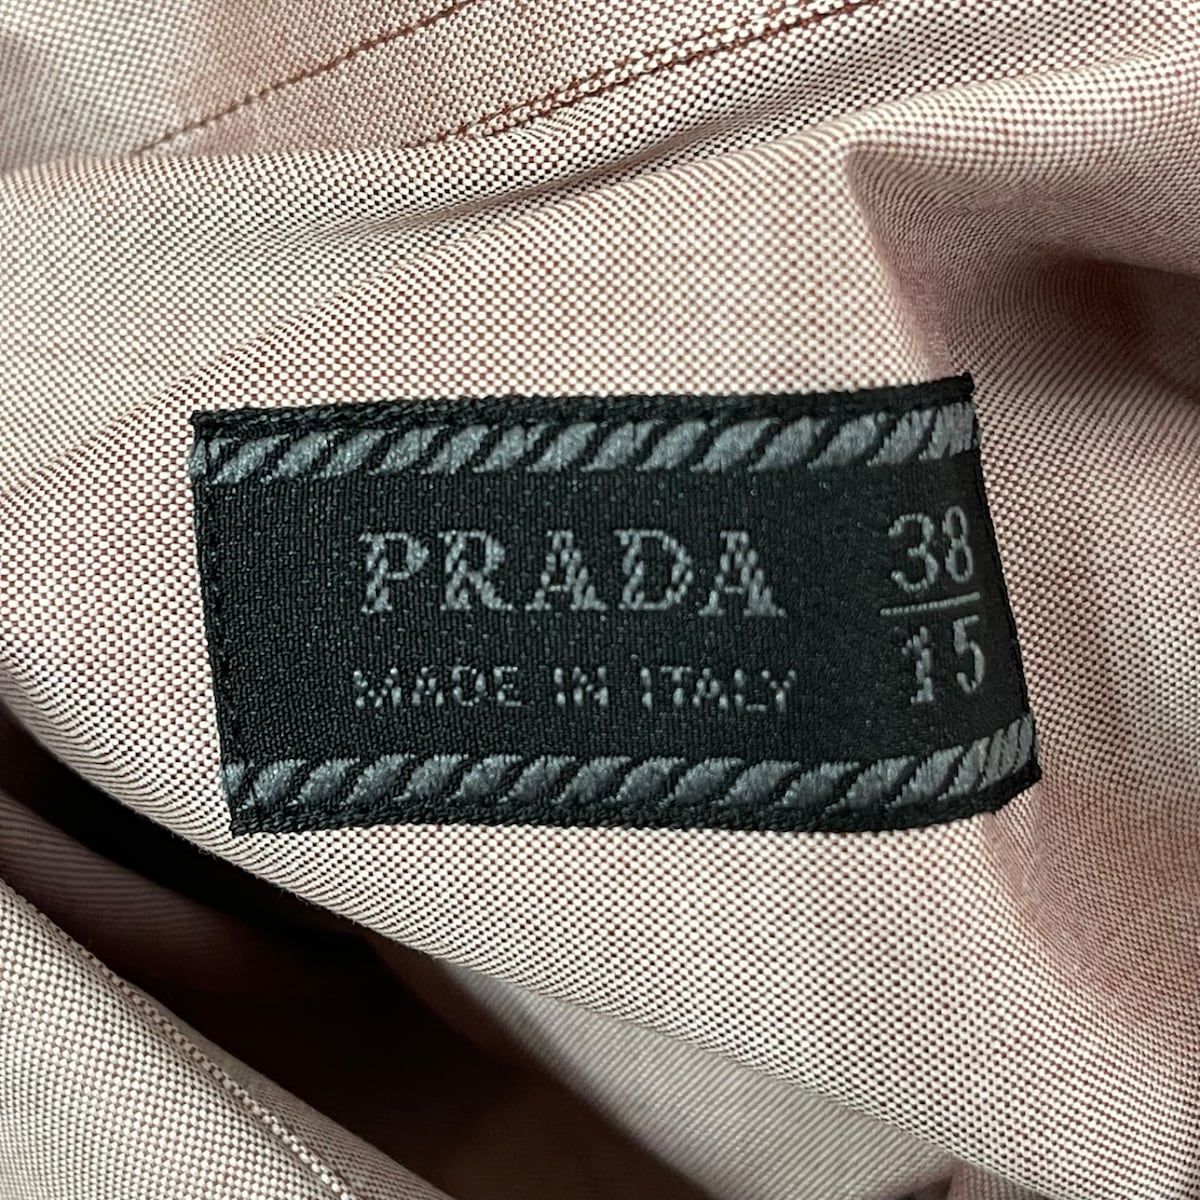 PRADA(プラダ) 長袖シャツ サイズ38 M メンズ美品 - ライトピンク×ボルドー